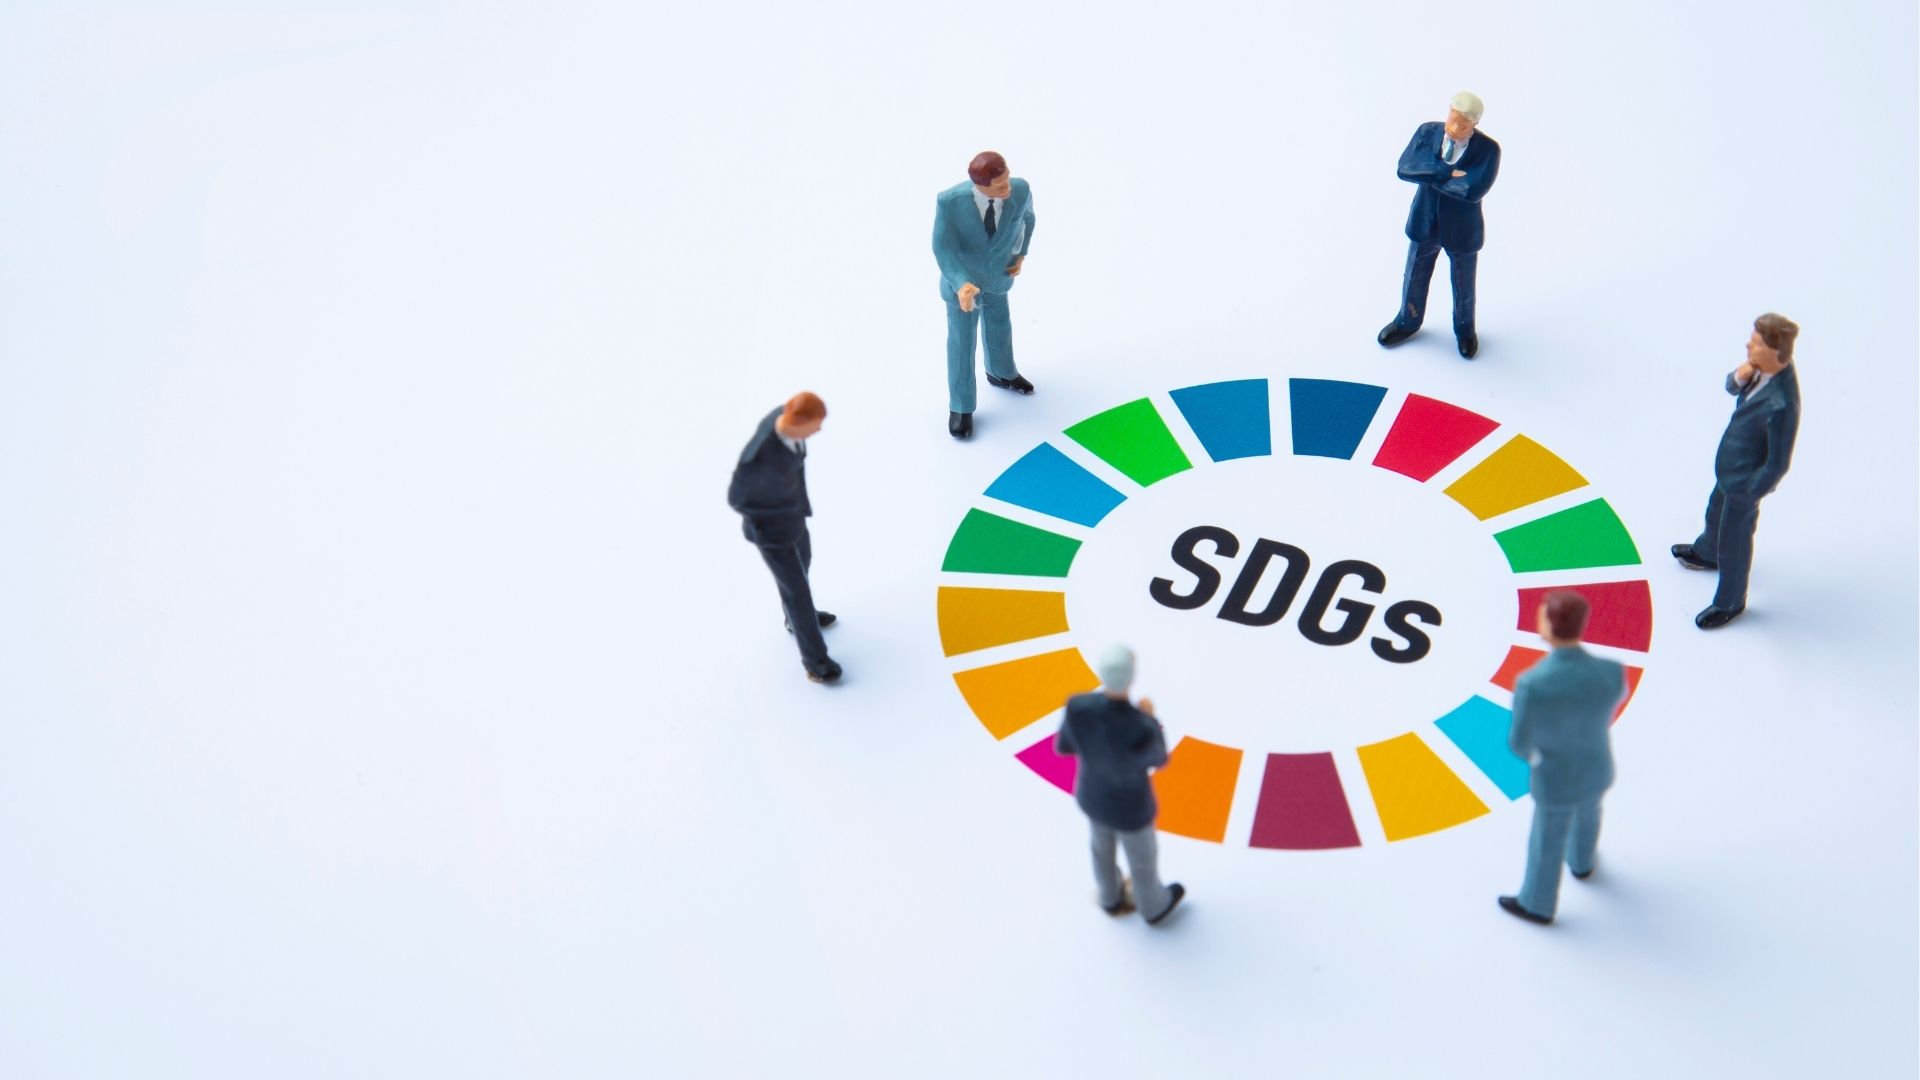 SDGs 経営陣の合意形成ワークショップ